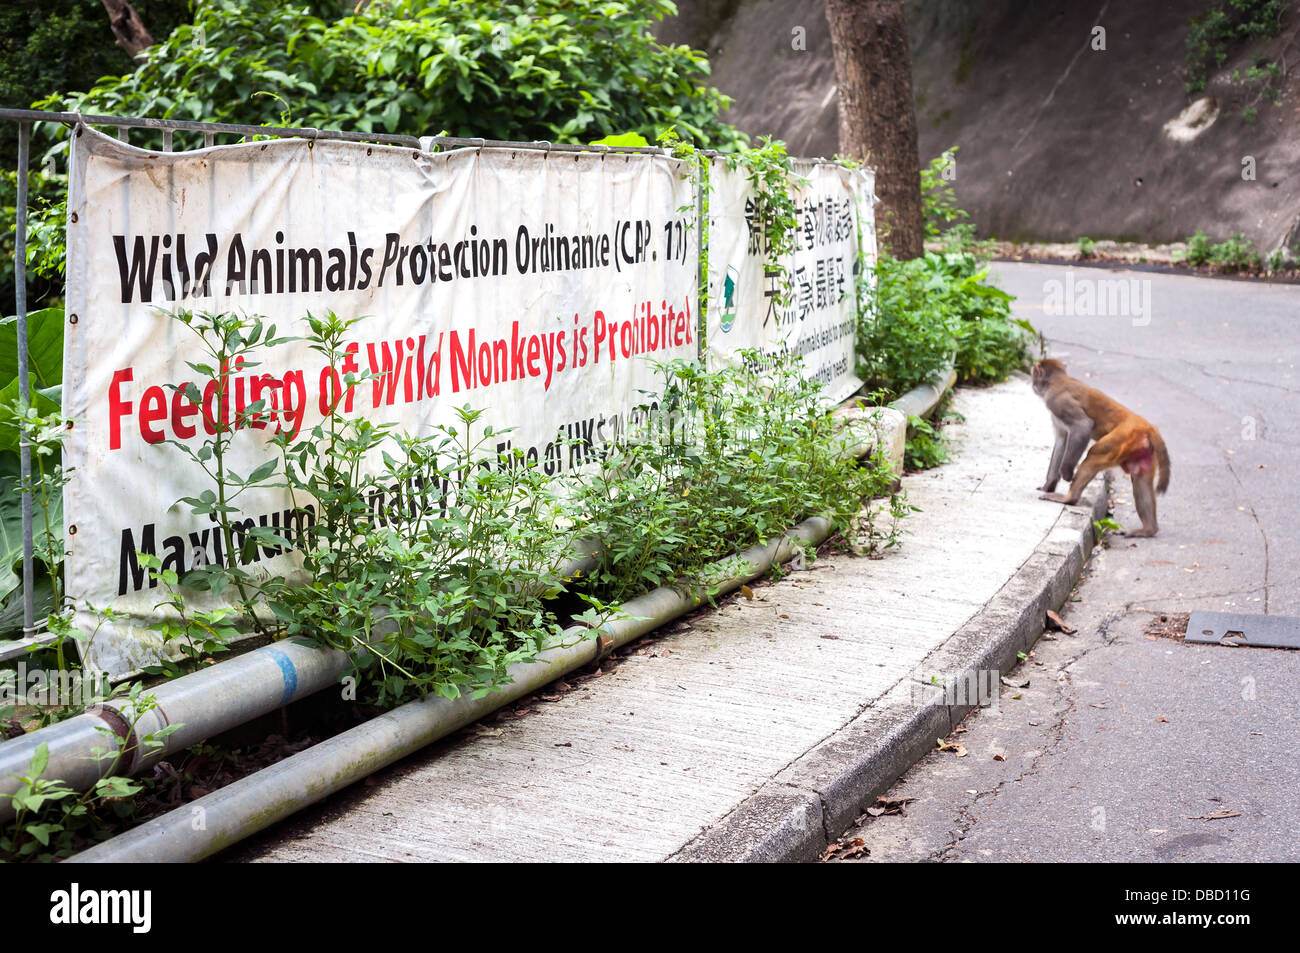 'No Feeding' sign at Monkey Mountain, Kowloon, Hong Kong Stock Photo